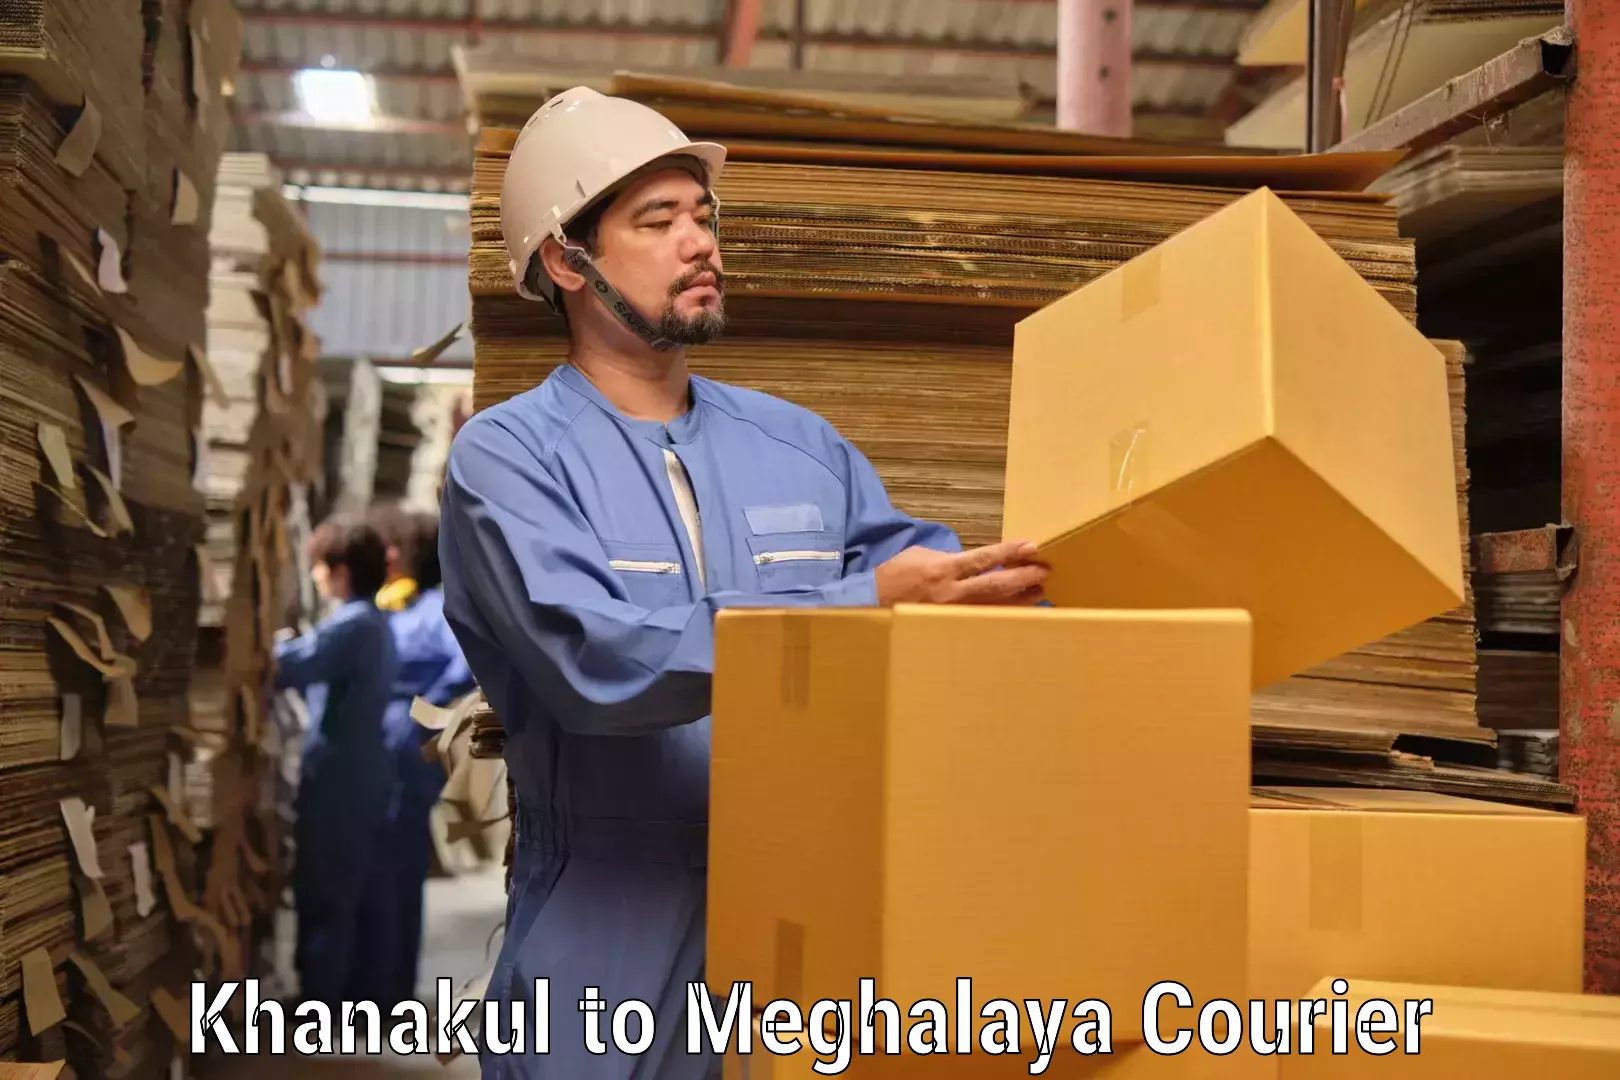 Quality courier services Khanakul to Meghalaya